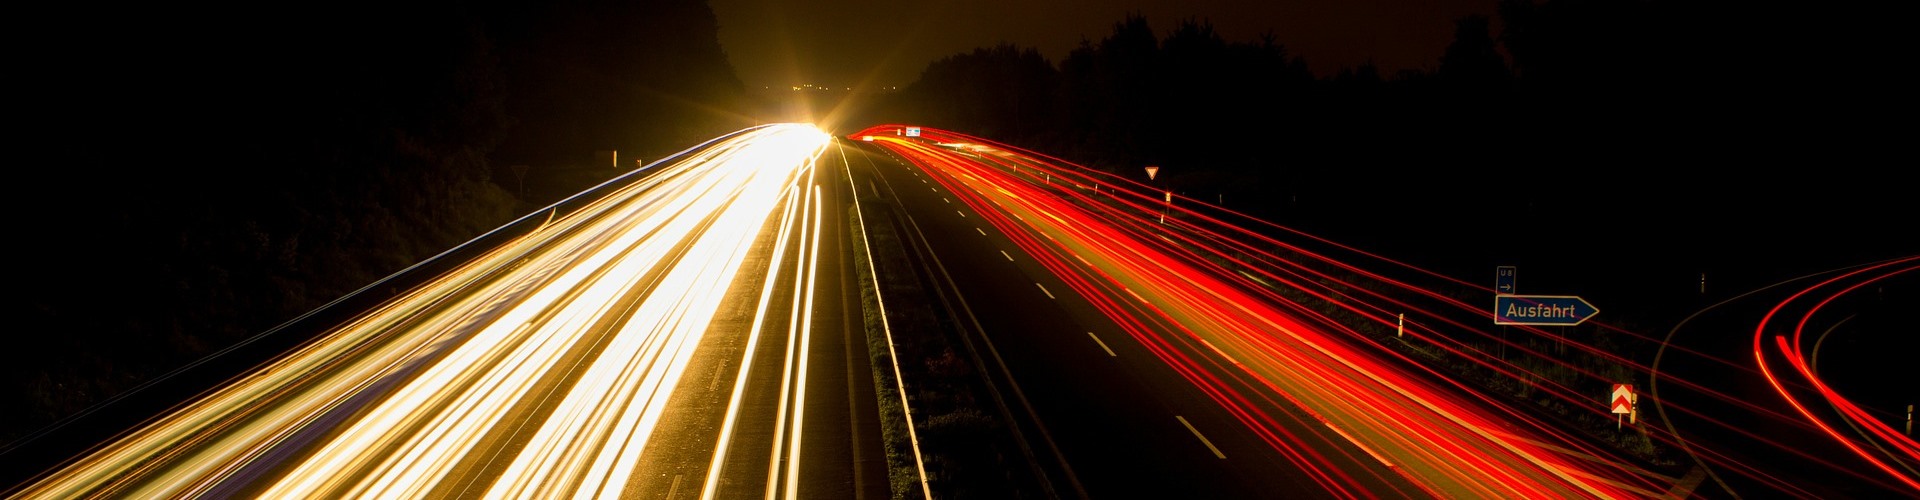 Auf einer mehrspurige Autobahn verschwimmen bei Nacht die Lichter der Autoscheinwerfer.